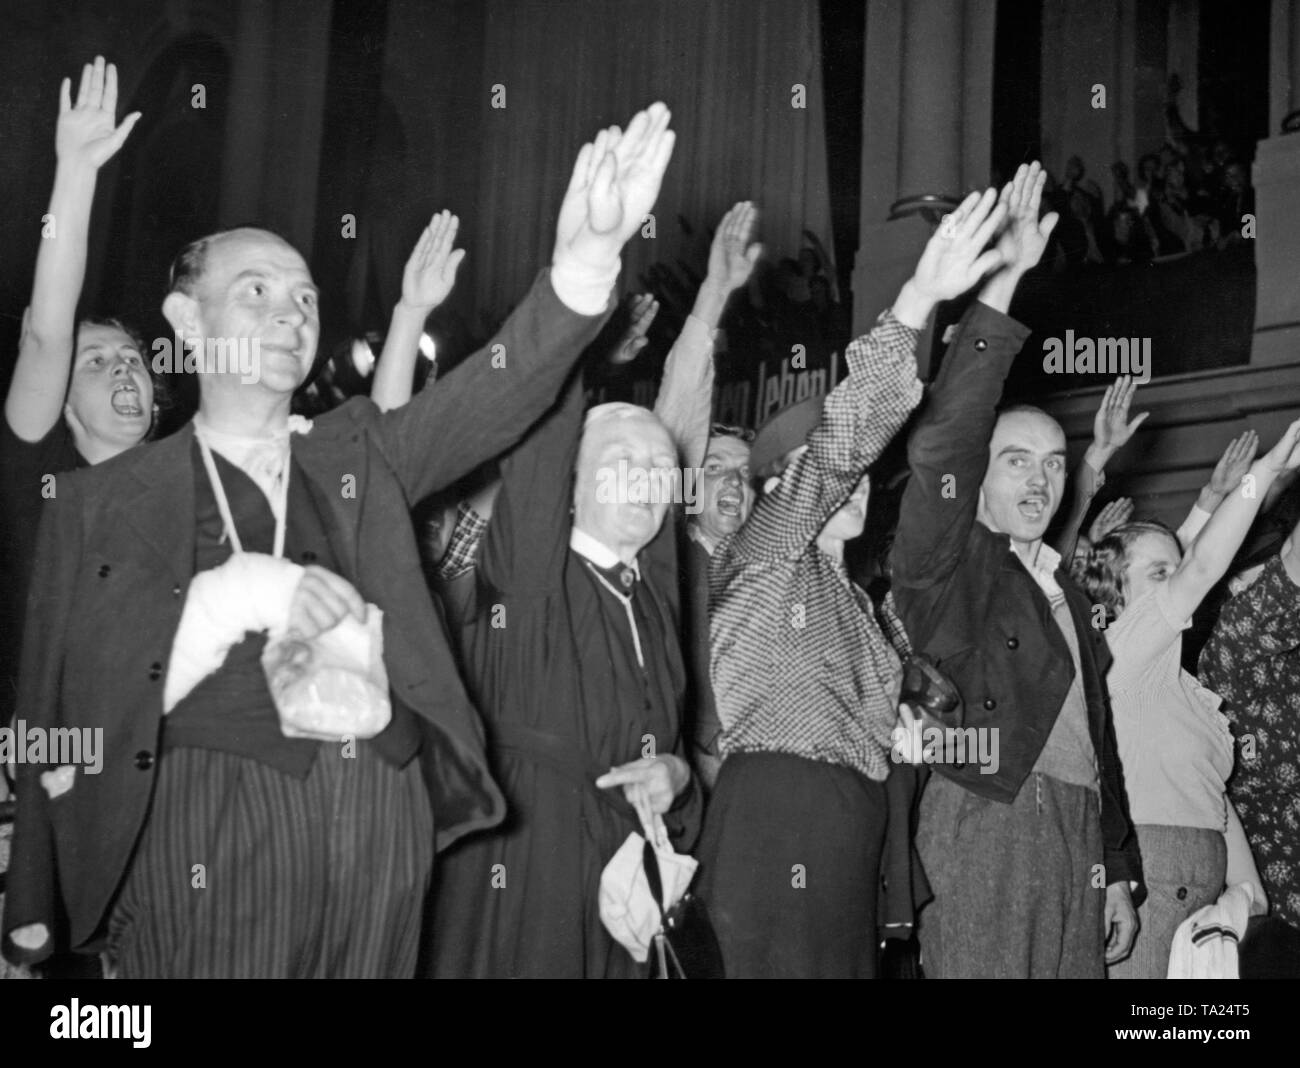 Flüchtlinge aus dem Sudetenland sang die "Deutsche Lieder" (Deutsche Lieder') bei einer Kundgebung in der Staedtischer Austellungspalast (Kommunale Ausstellung Palast) in Dresden am 19. Oktober 1938. Stockfoto